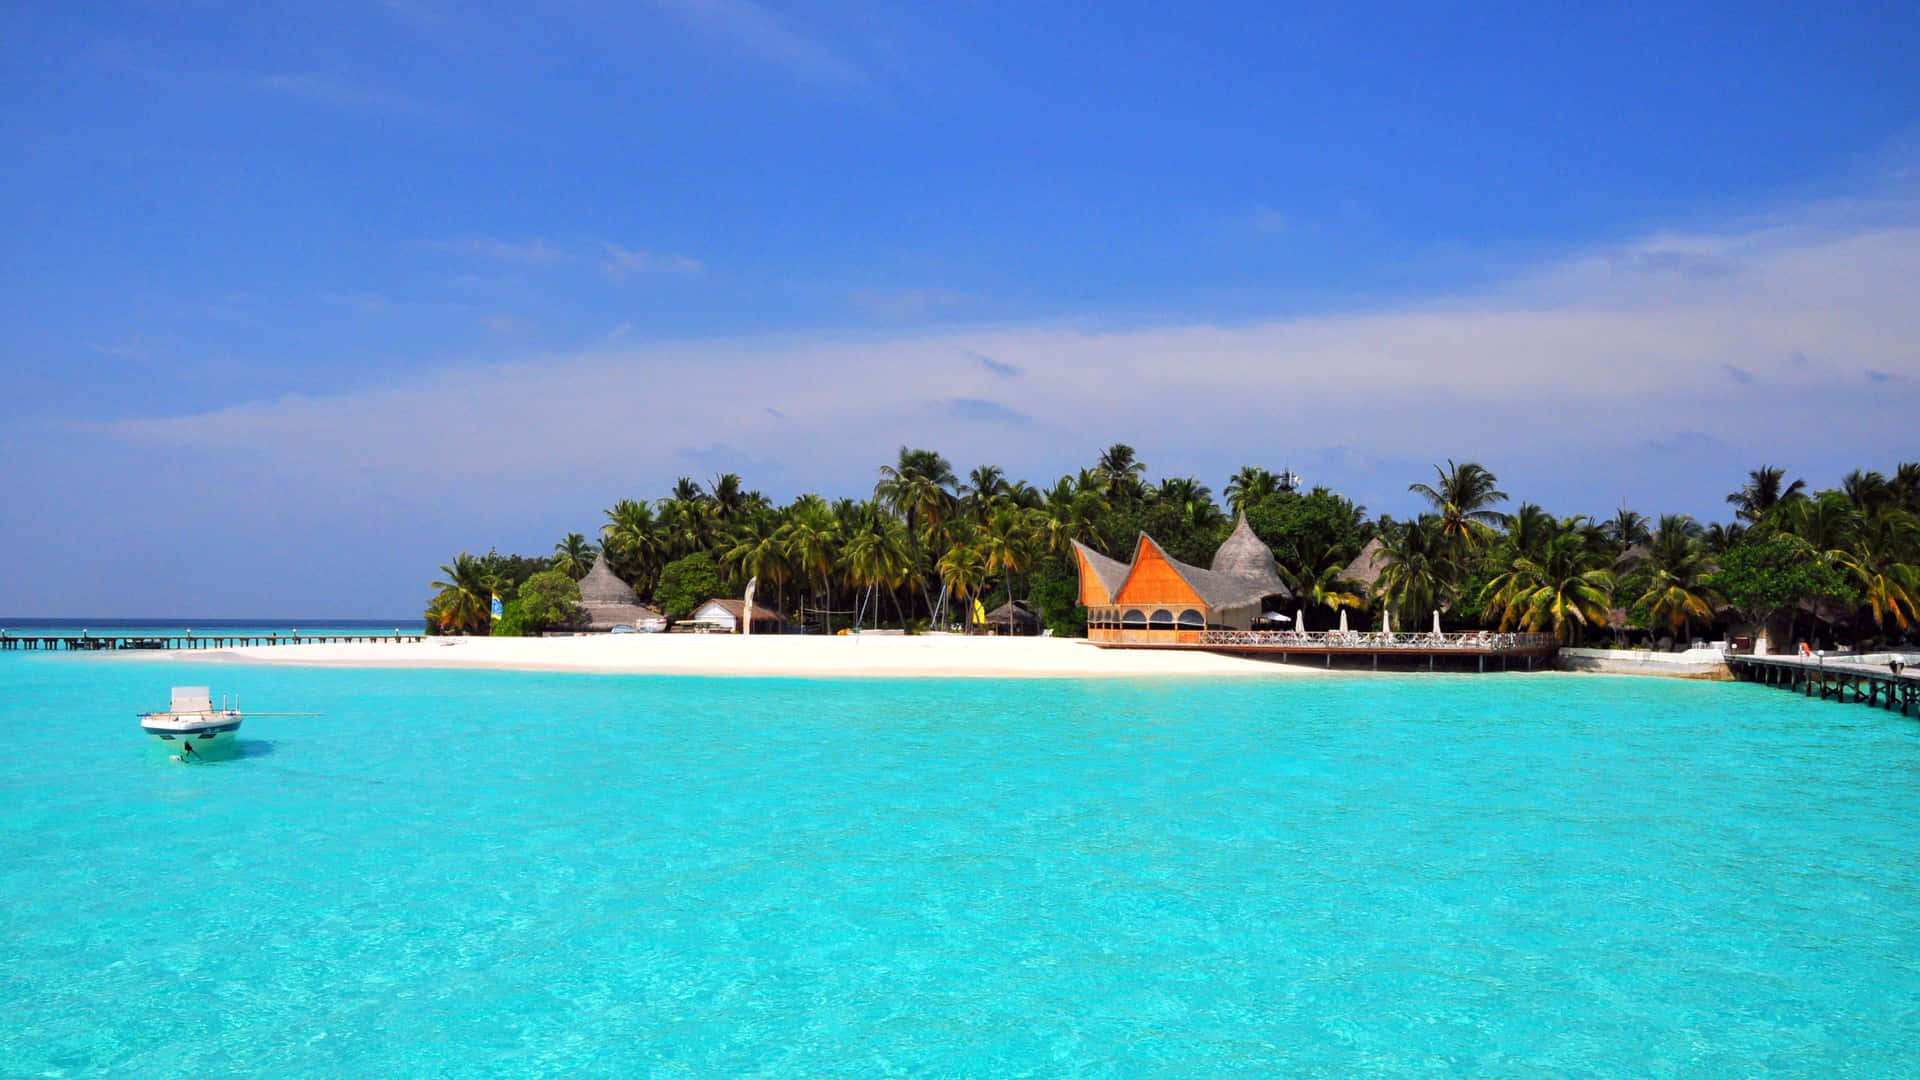 Relaxee Revitalize-se Em Um Paraíso De Ilha Tropical. Papel de Parede